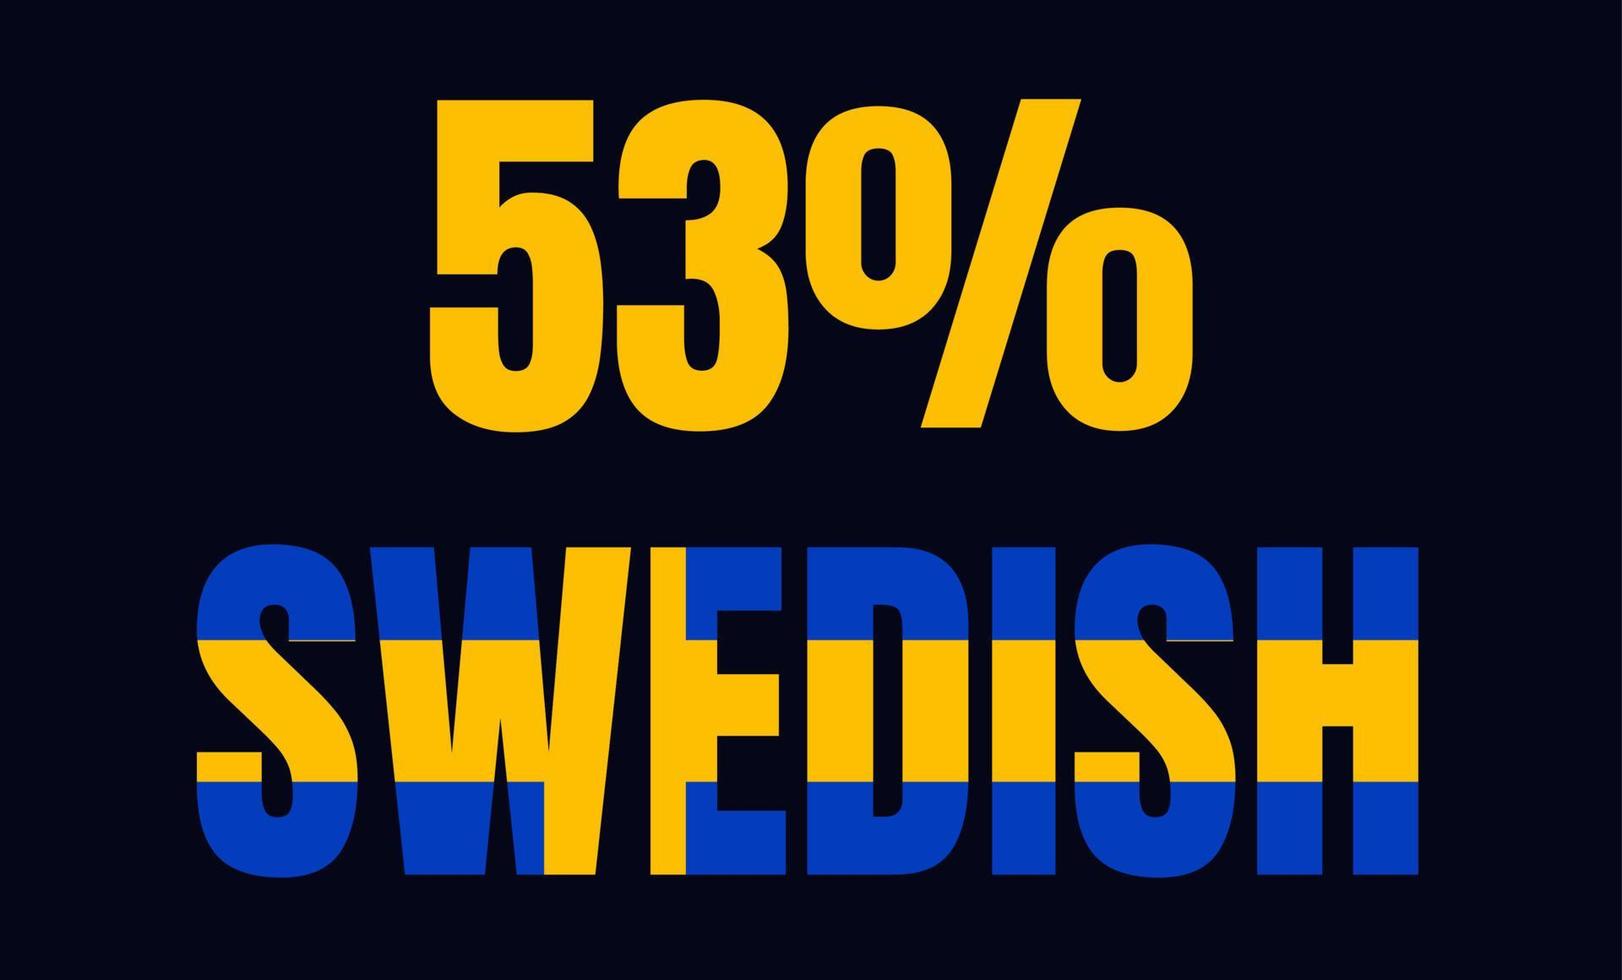 53 pourcentage d'illustration d'art vectoriel d'étiquette de signe suédois avec une police fantastique et une couleur jaune bleu